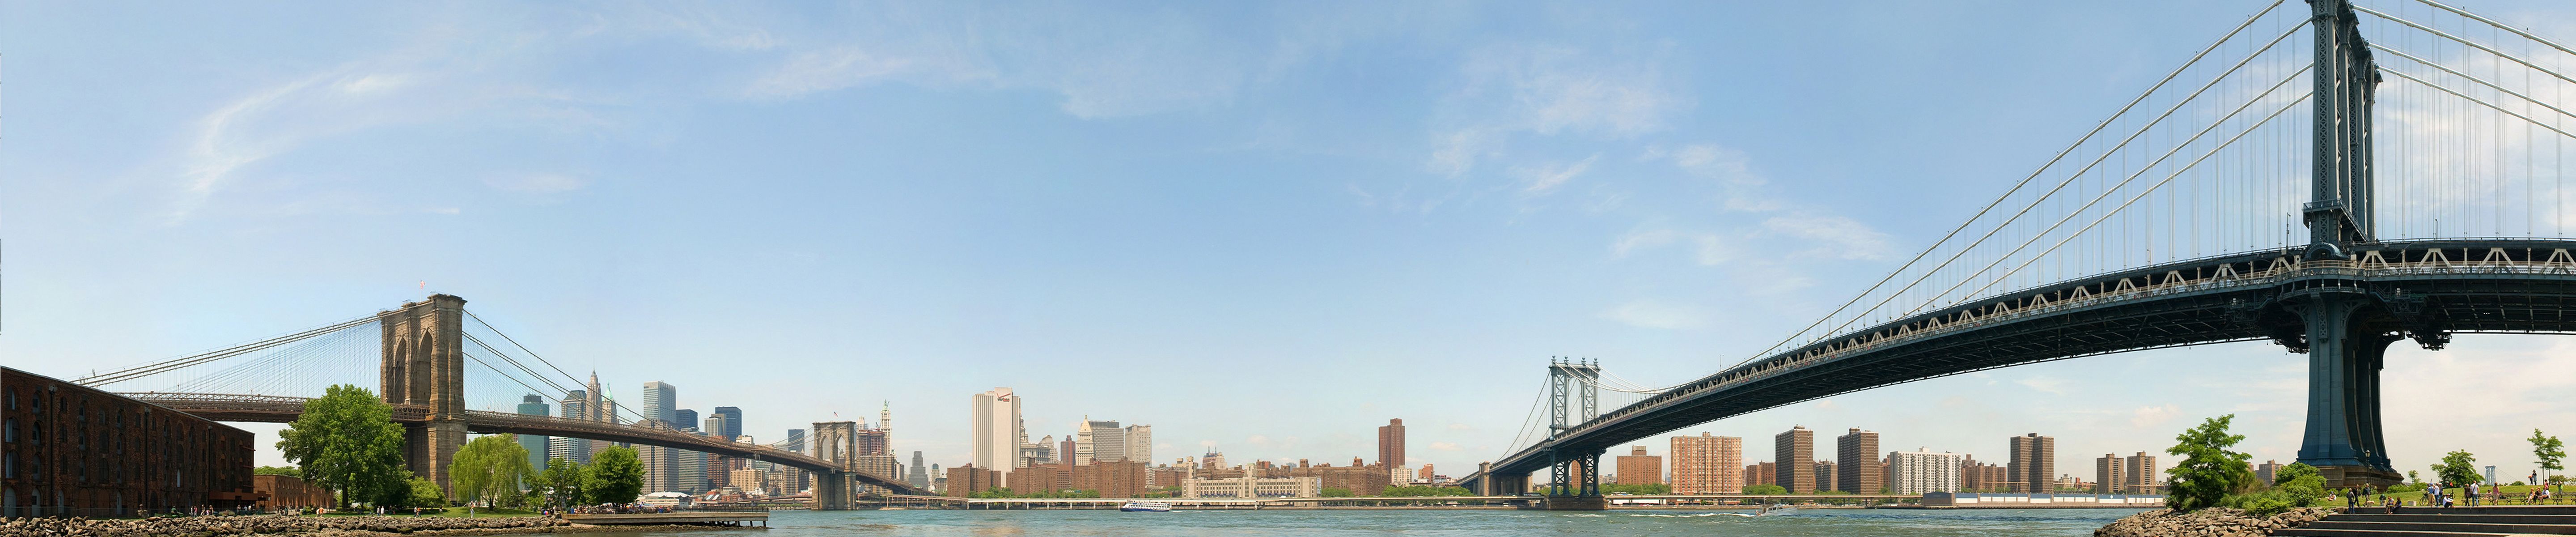 Wallpaper New York Brooklyn Bridge (L) Manhattan Bridge (R ...